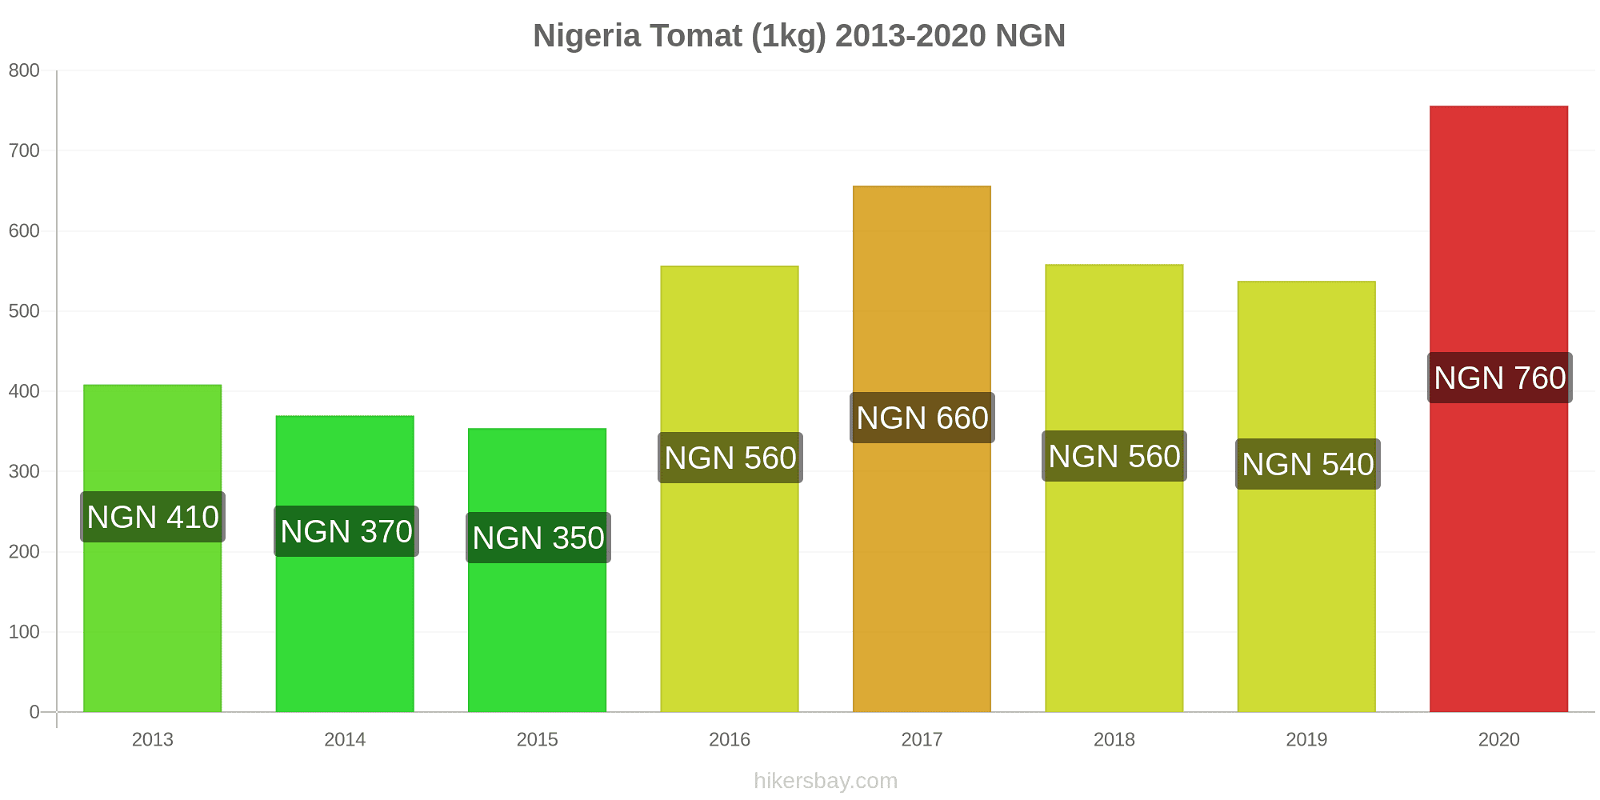 Nigeria perubahan harga Tomat (1kg) hikersbay.com